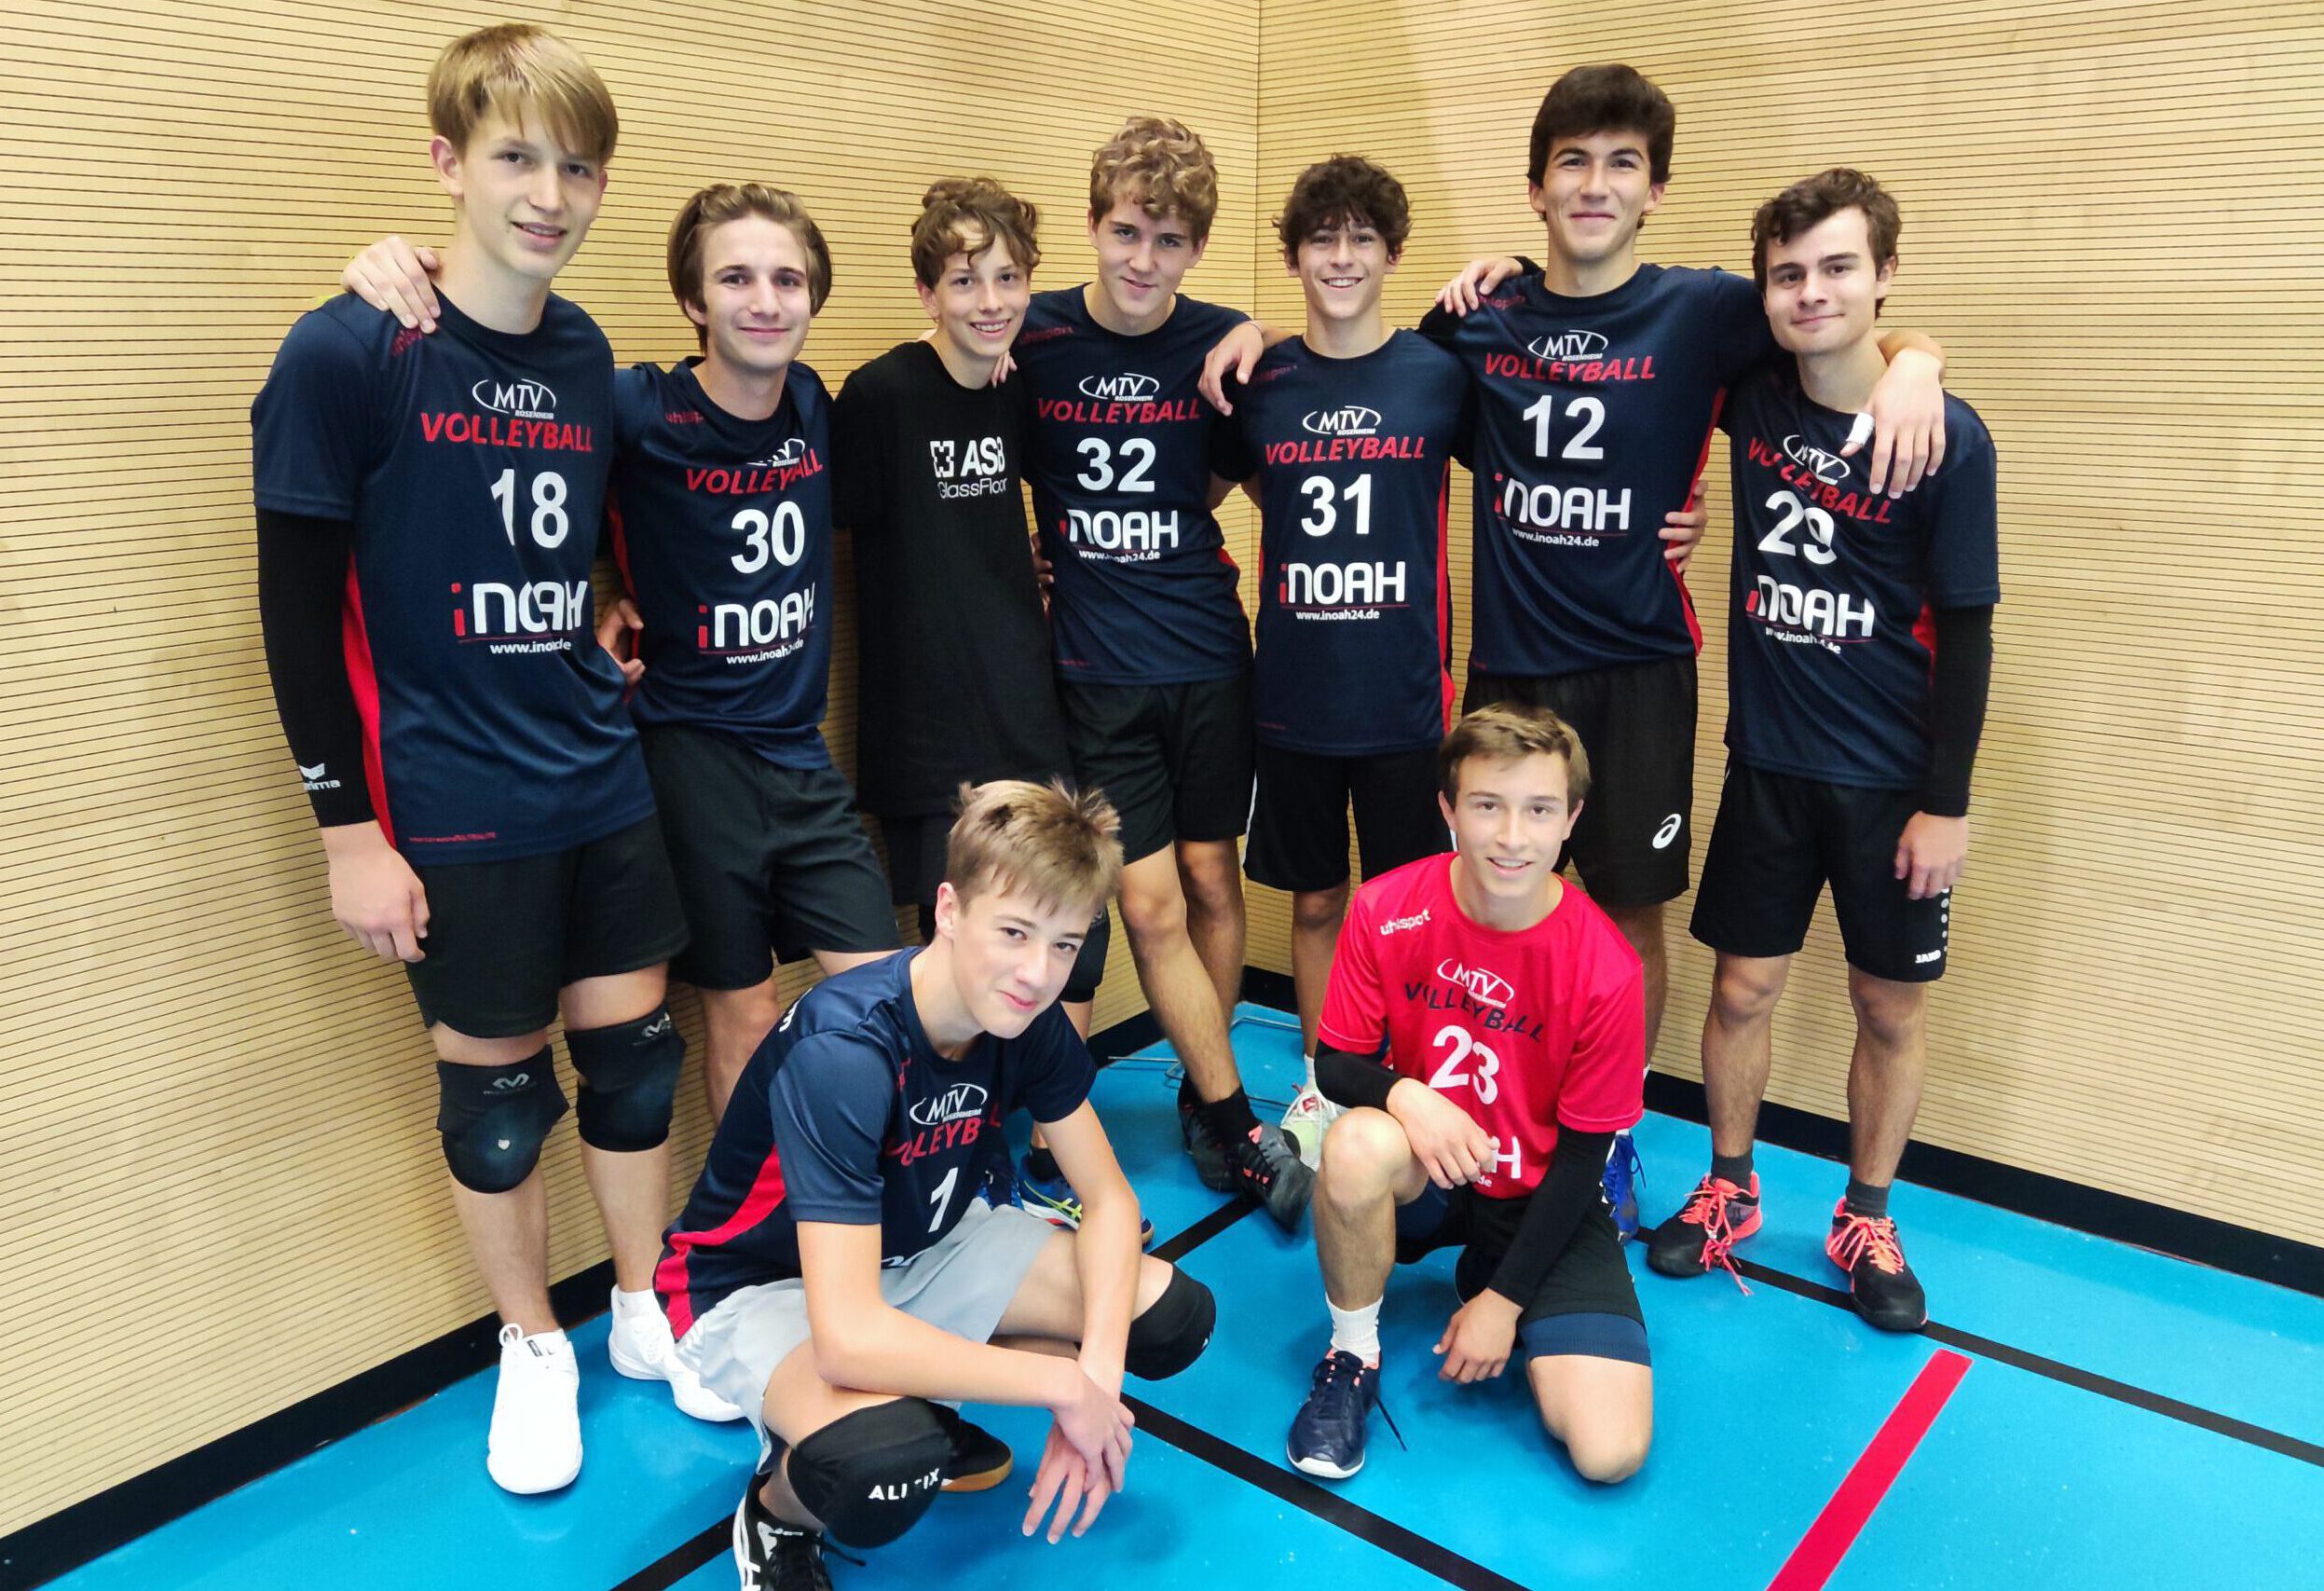 https://www.volleyball-rosenheim.de/wp-content/uploads/2022/10/Volleyball_Rosenheim_U20m_Lohhof-scaled-e1665587319773.jpg